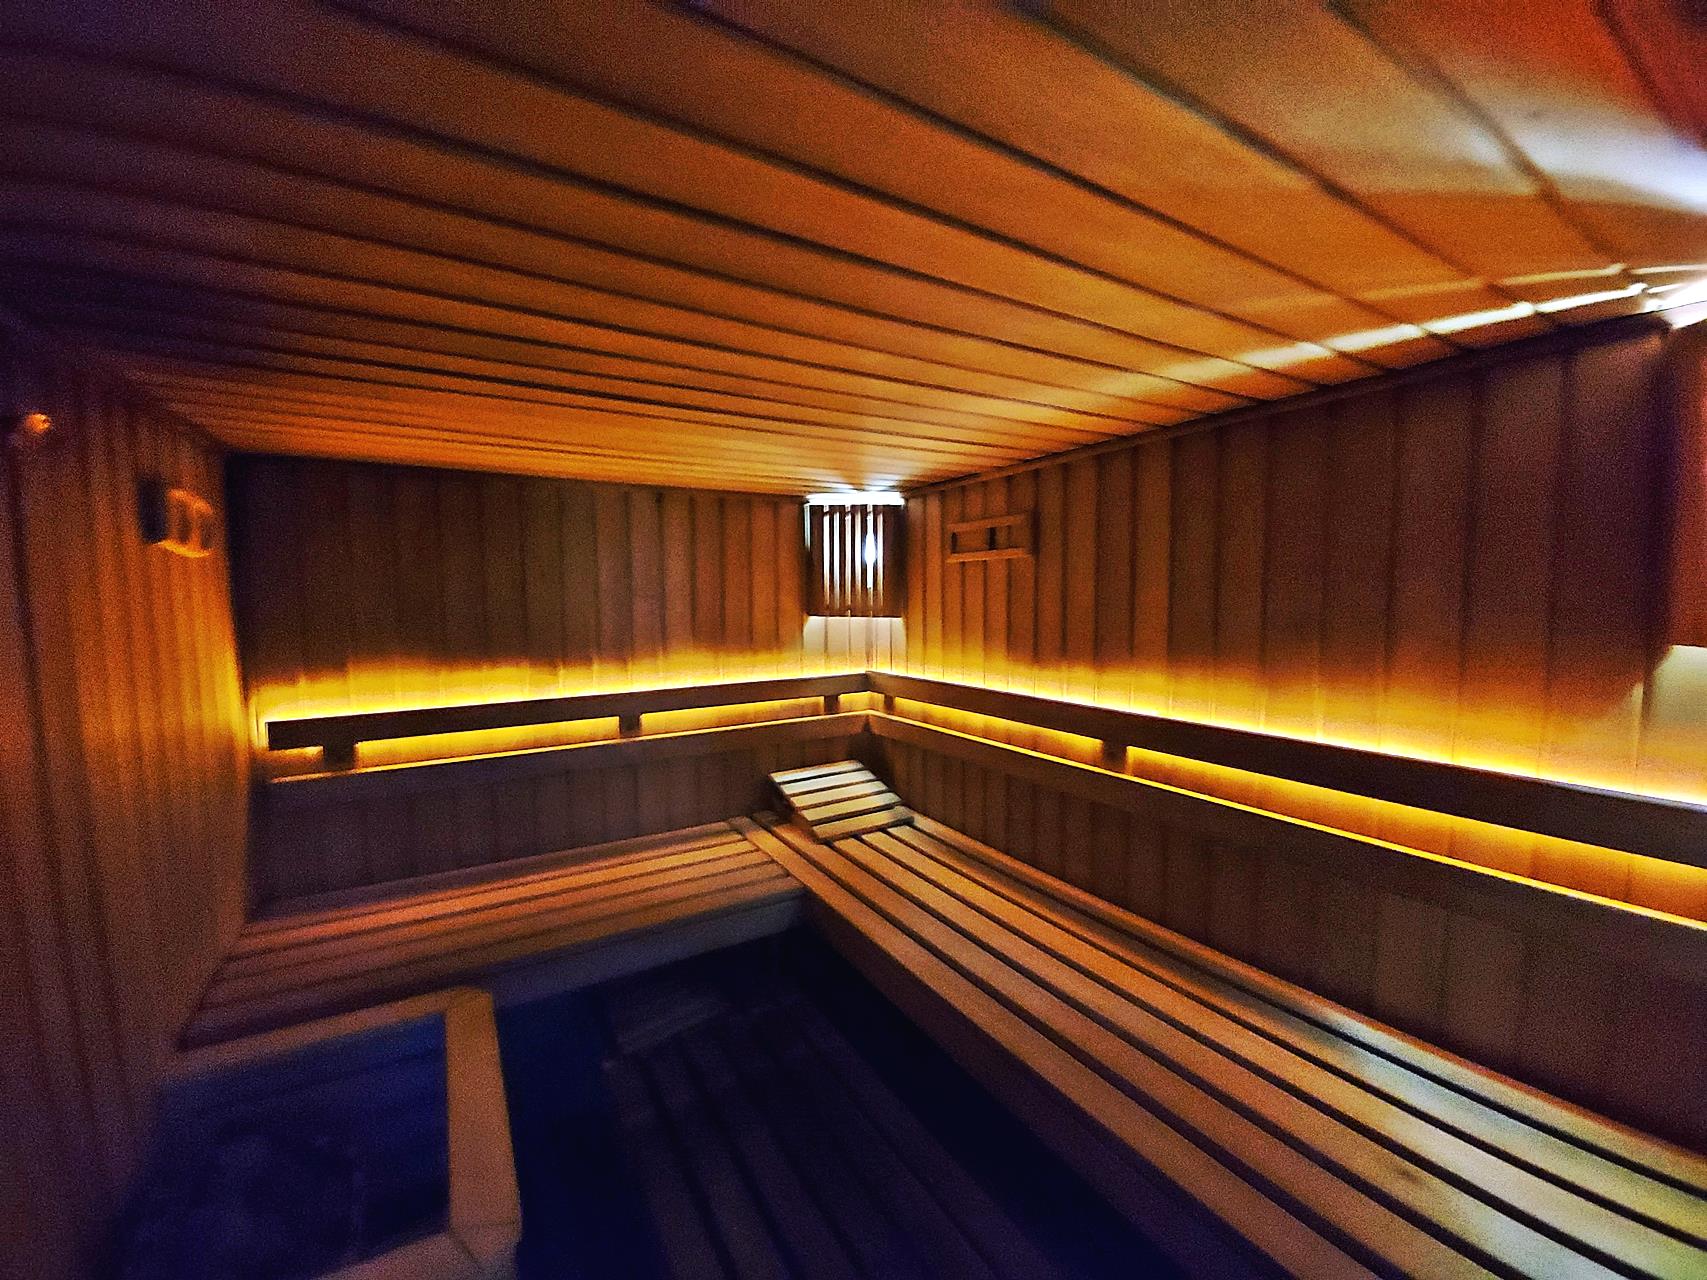 Sauna sucha